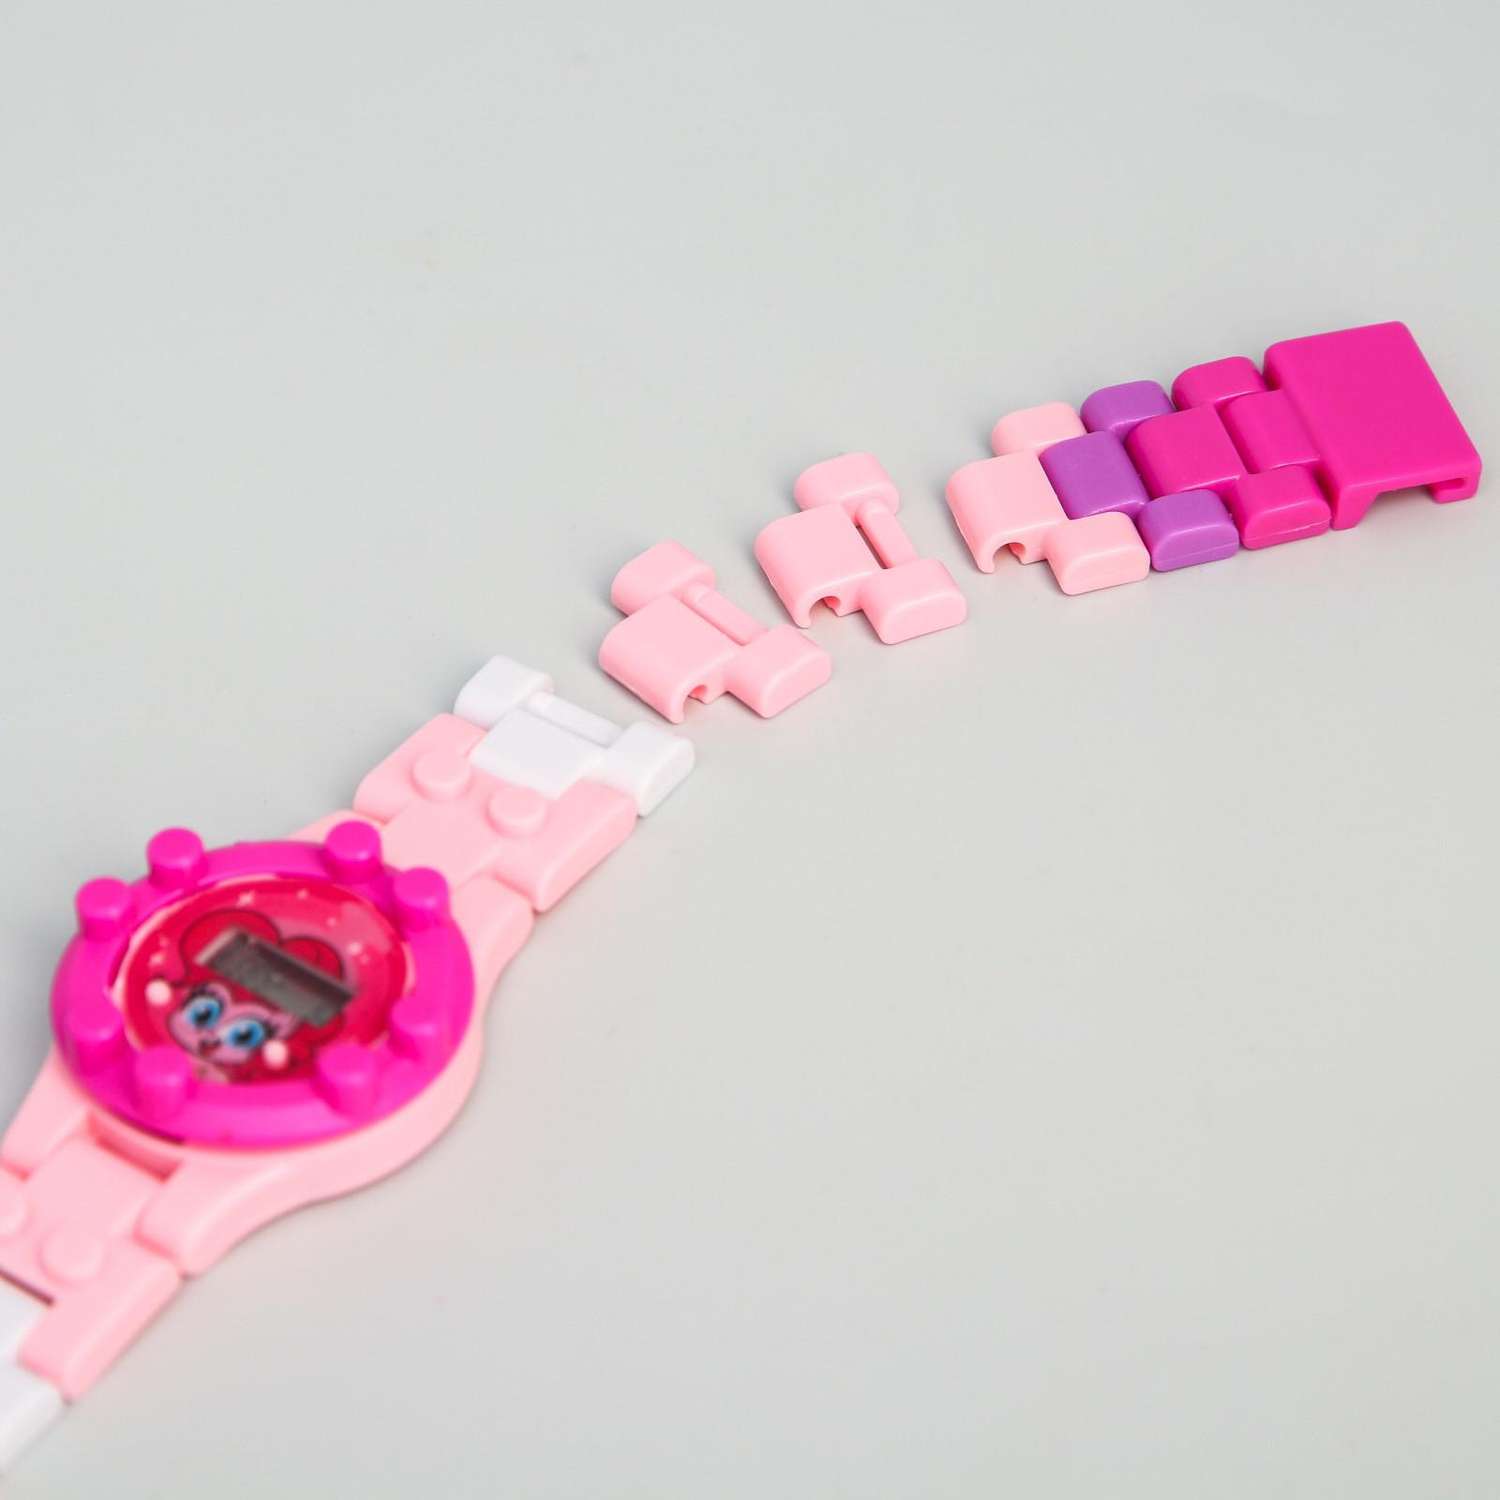 Часы наручные электронные Hasbro Пинки Пай My Little Pony с ремешком конструктором - фото 3